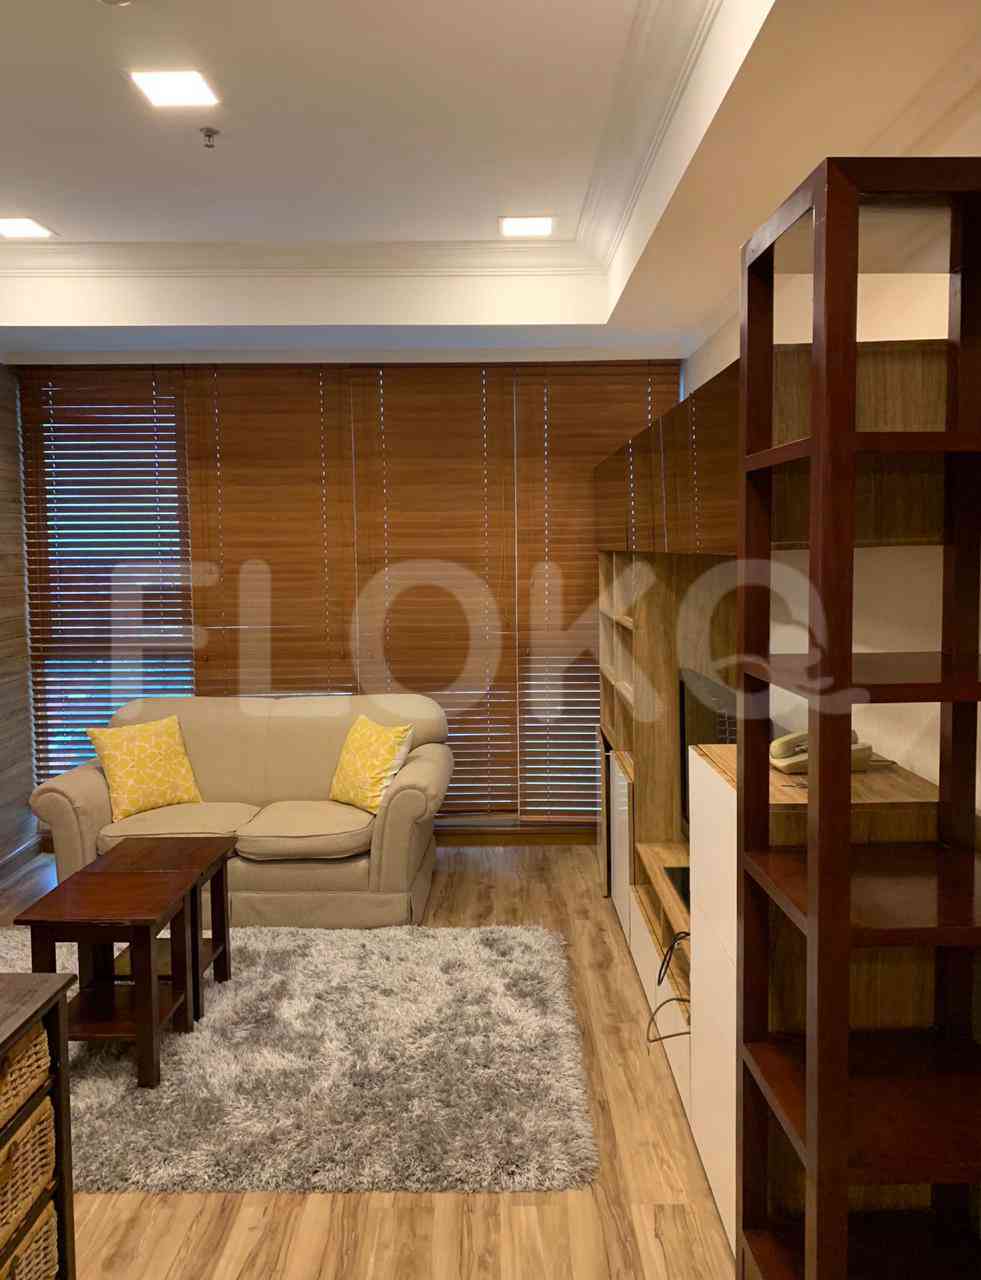 4 Bedroom on 10th Floor for Rent in Puri Imperium Apartment - fkua44 5